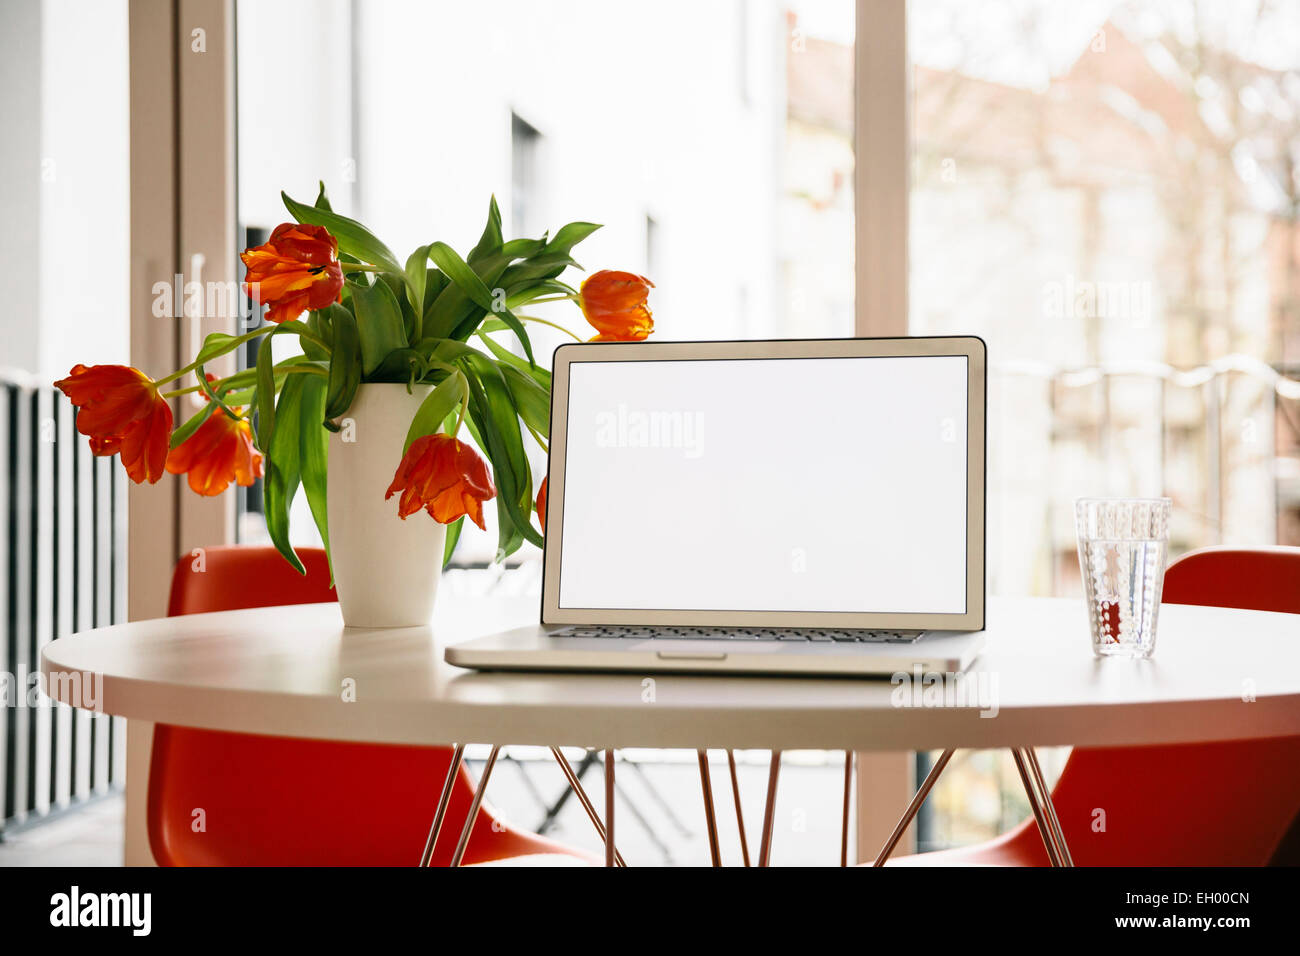 Laptop-Bildschirm auf einem weißen runden Tisch mit roten Tulpen und Stühlen Stockfoto